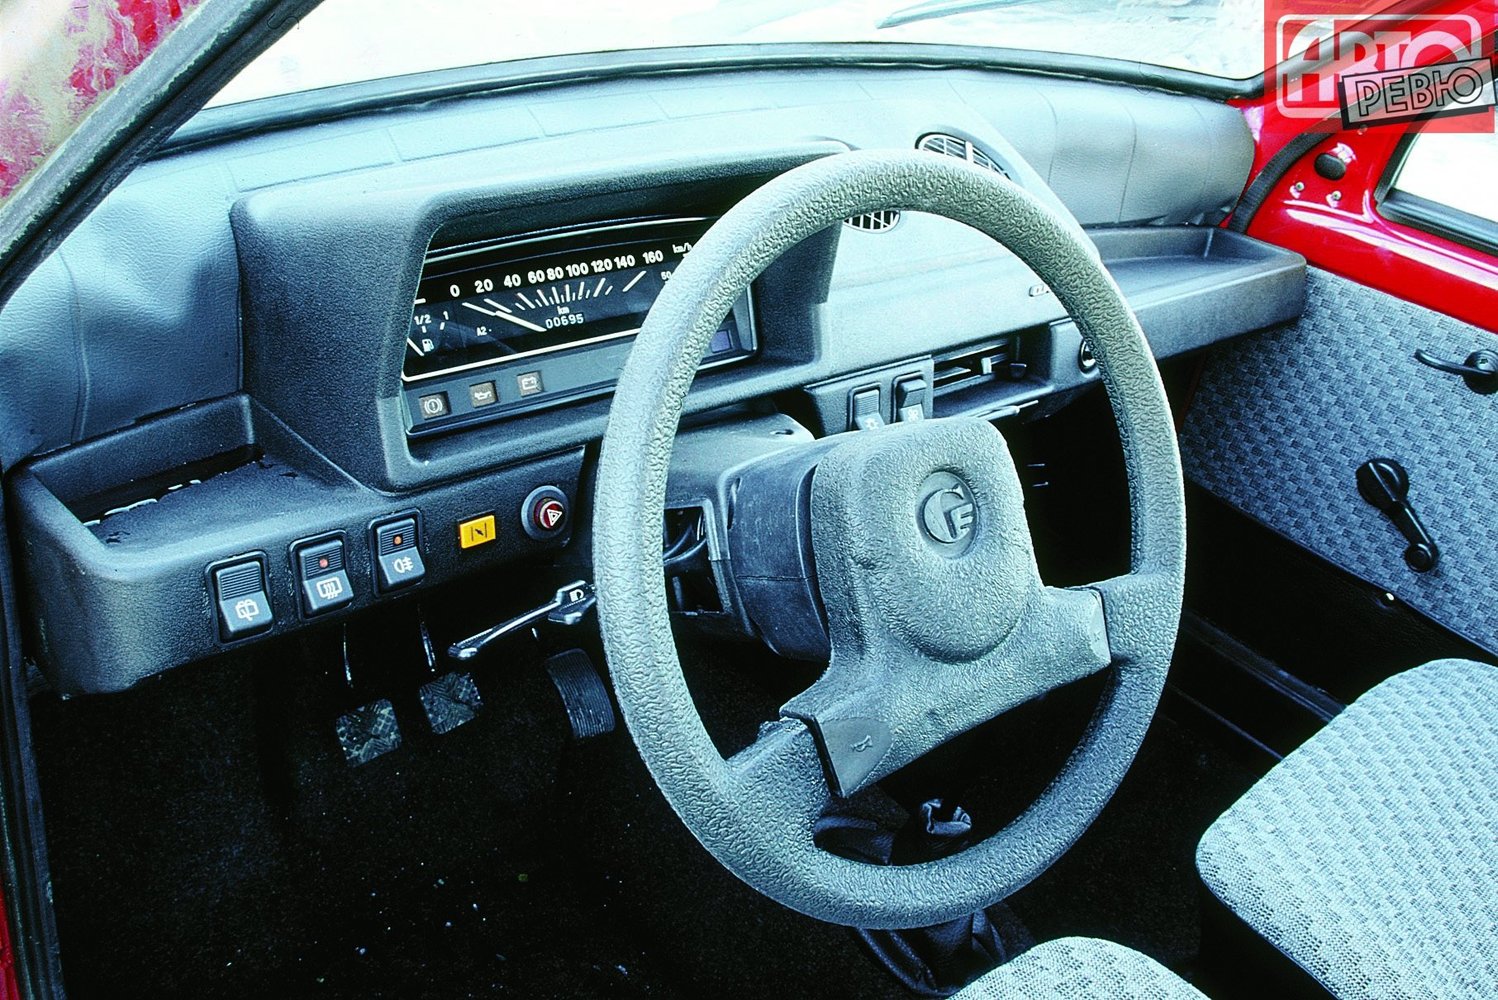 хэтчбек 3 дв. ВАЗ (Lada) 1111 Ока 1989 - 2008г выпуска модификация 0.6 MT (29 л.с.)